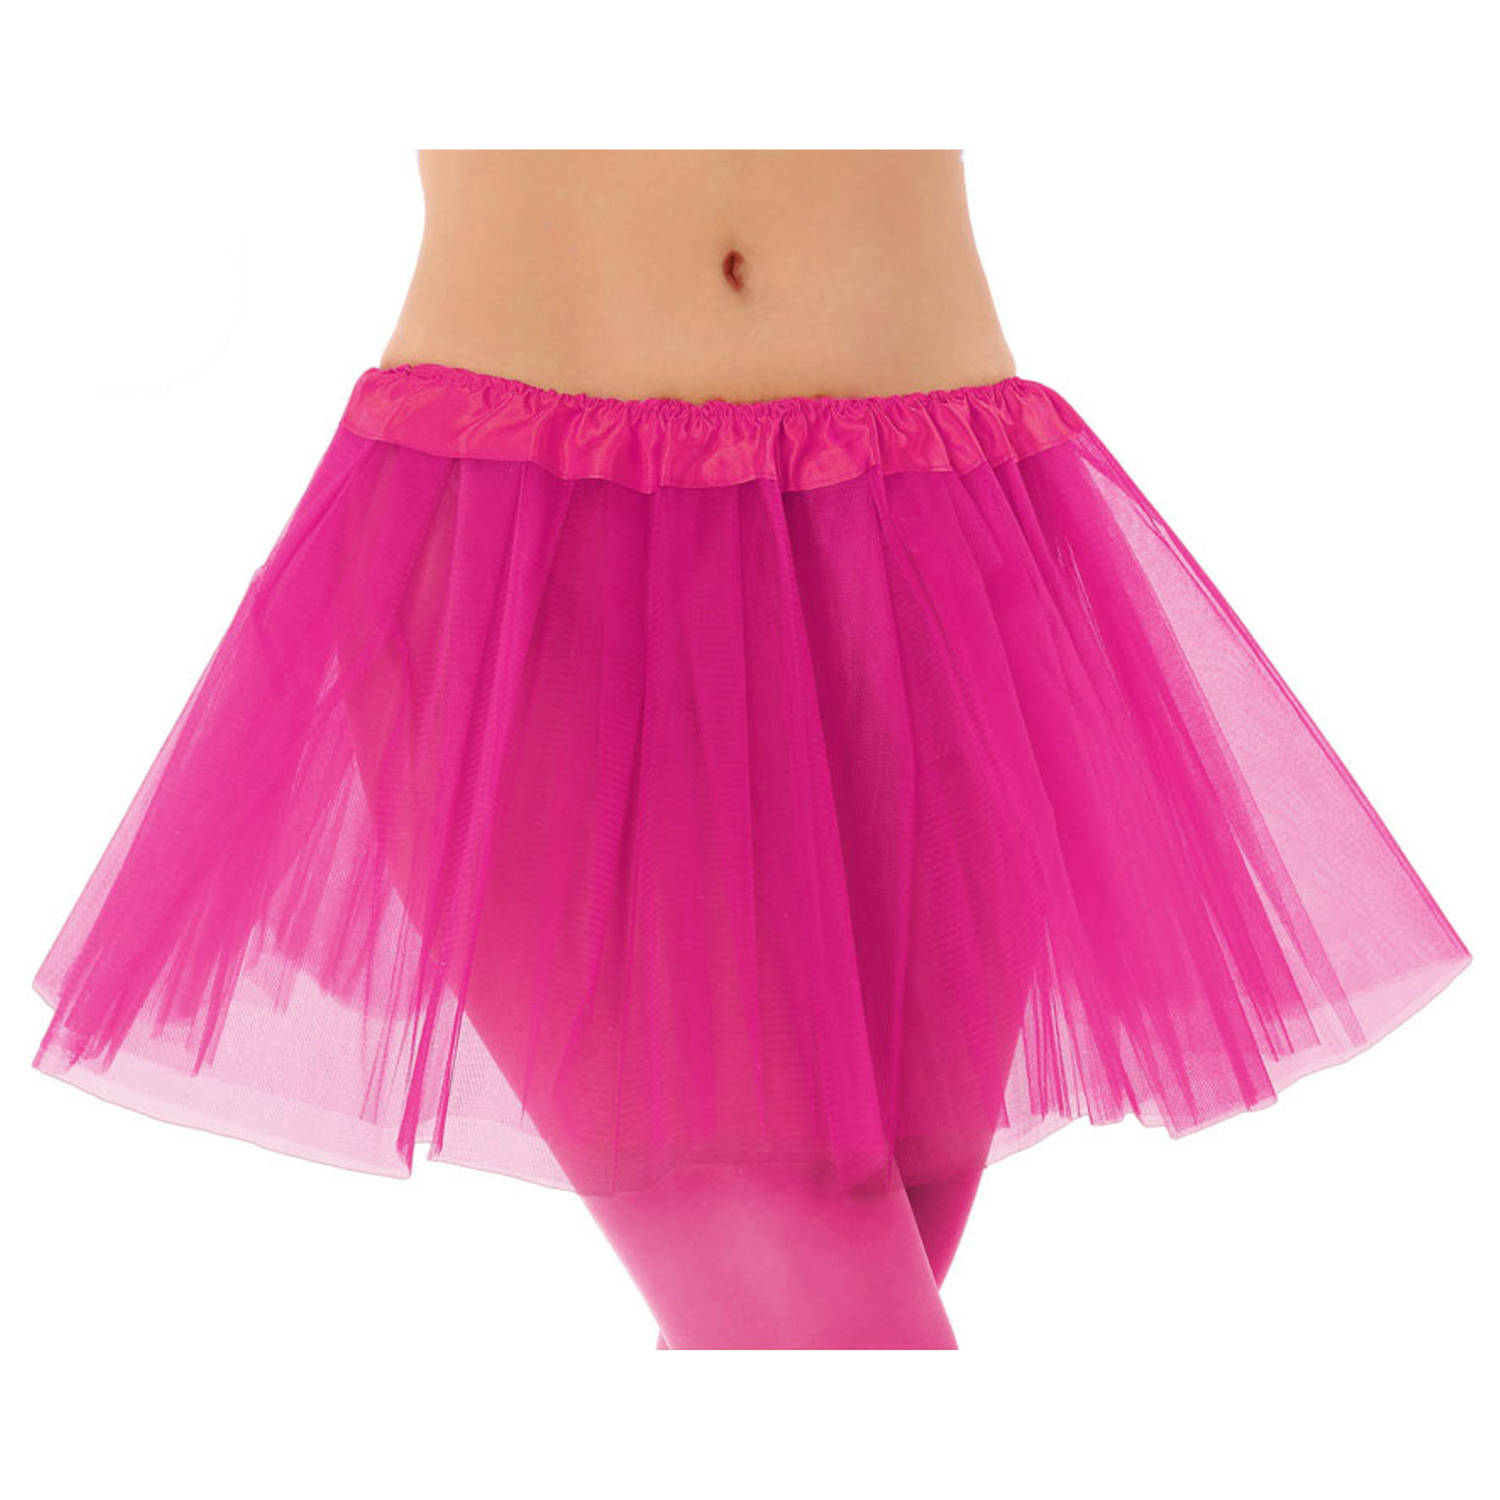 Dames verkleed rokje/tutu - tule stof met elastiek - fuchsia roze - one size model - van 4 tot 12 jaar